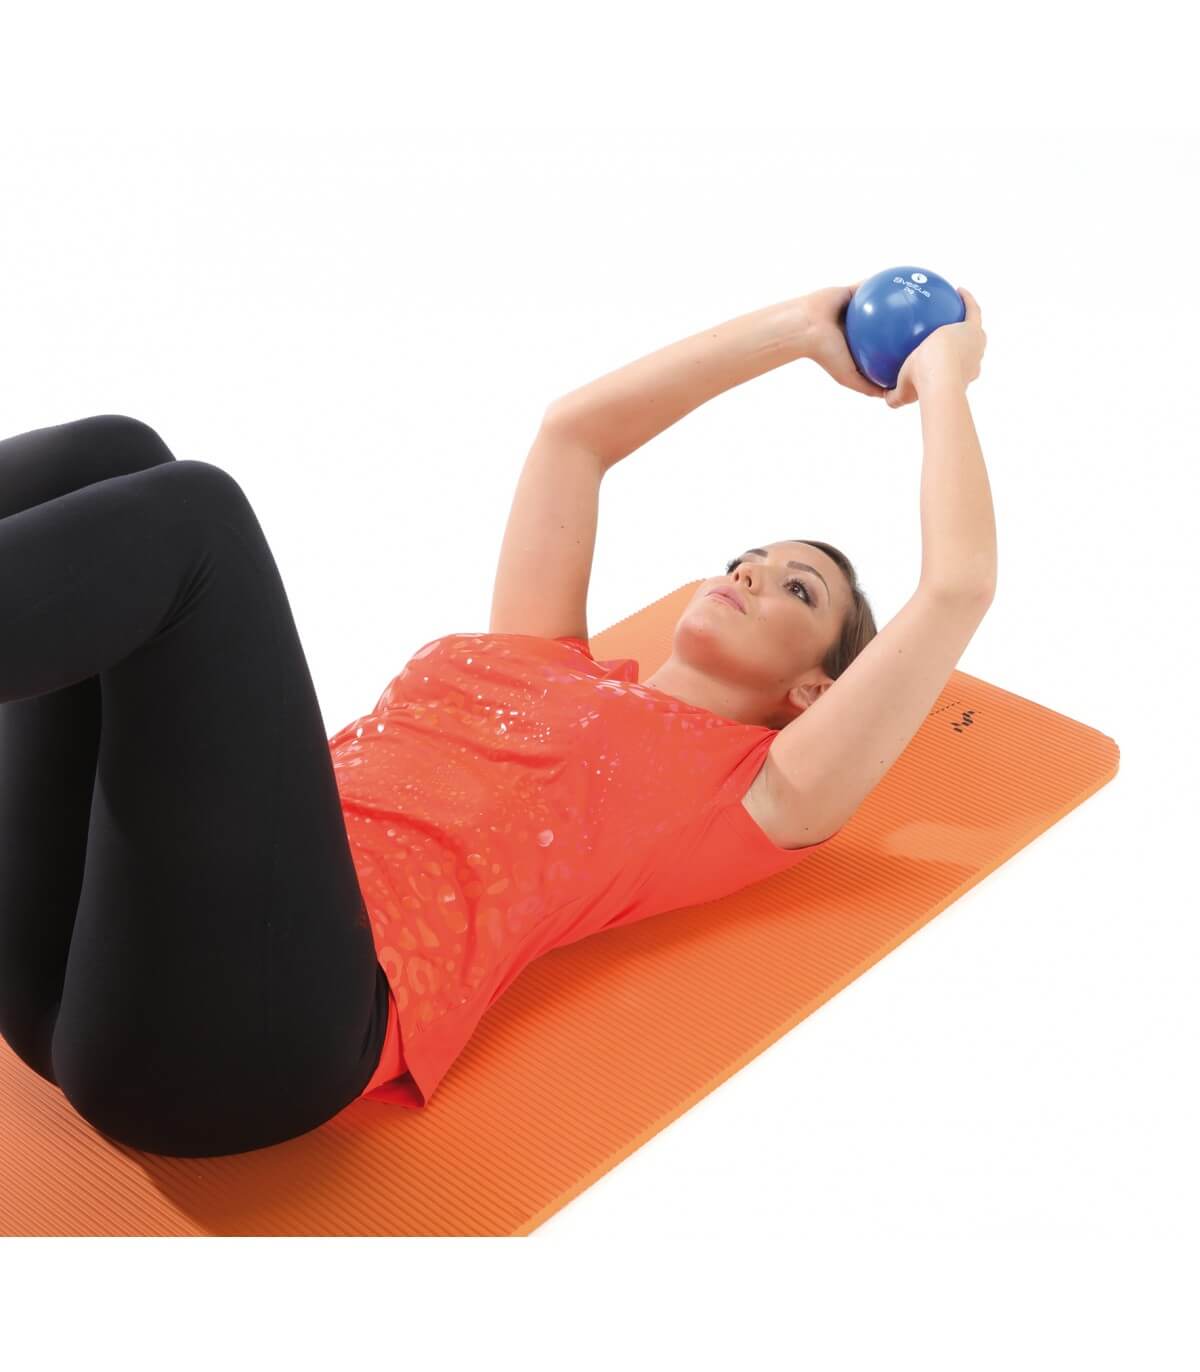 Yoga & Pilates ✓ Enhance Your Exercise